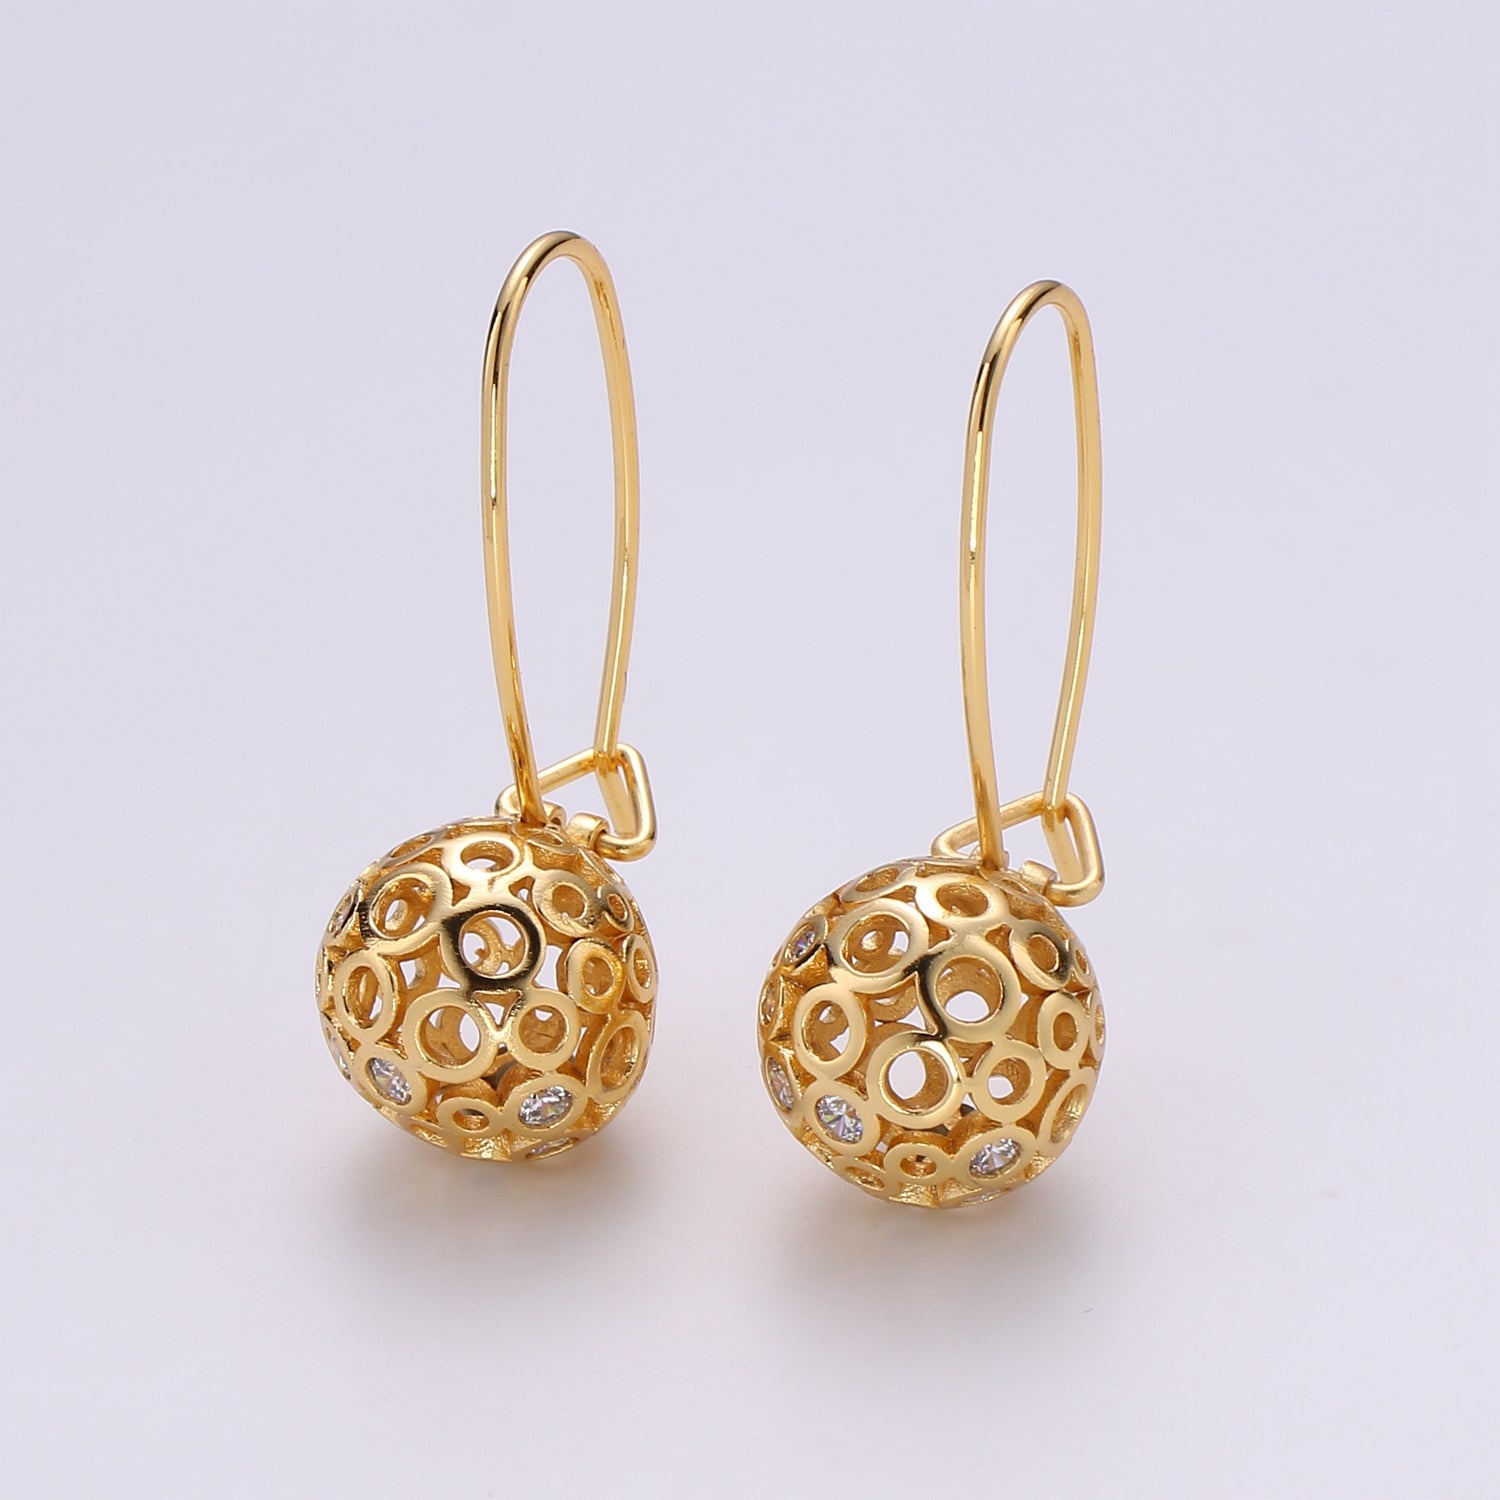 1 pair Gold Ball Earrings - 24k Gold Filled Drop Ball Earrings Dangle Earrings - Statement Jewelry Party Earring Ear-1302 - DLUXCA